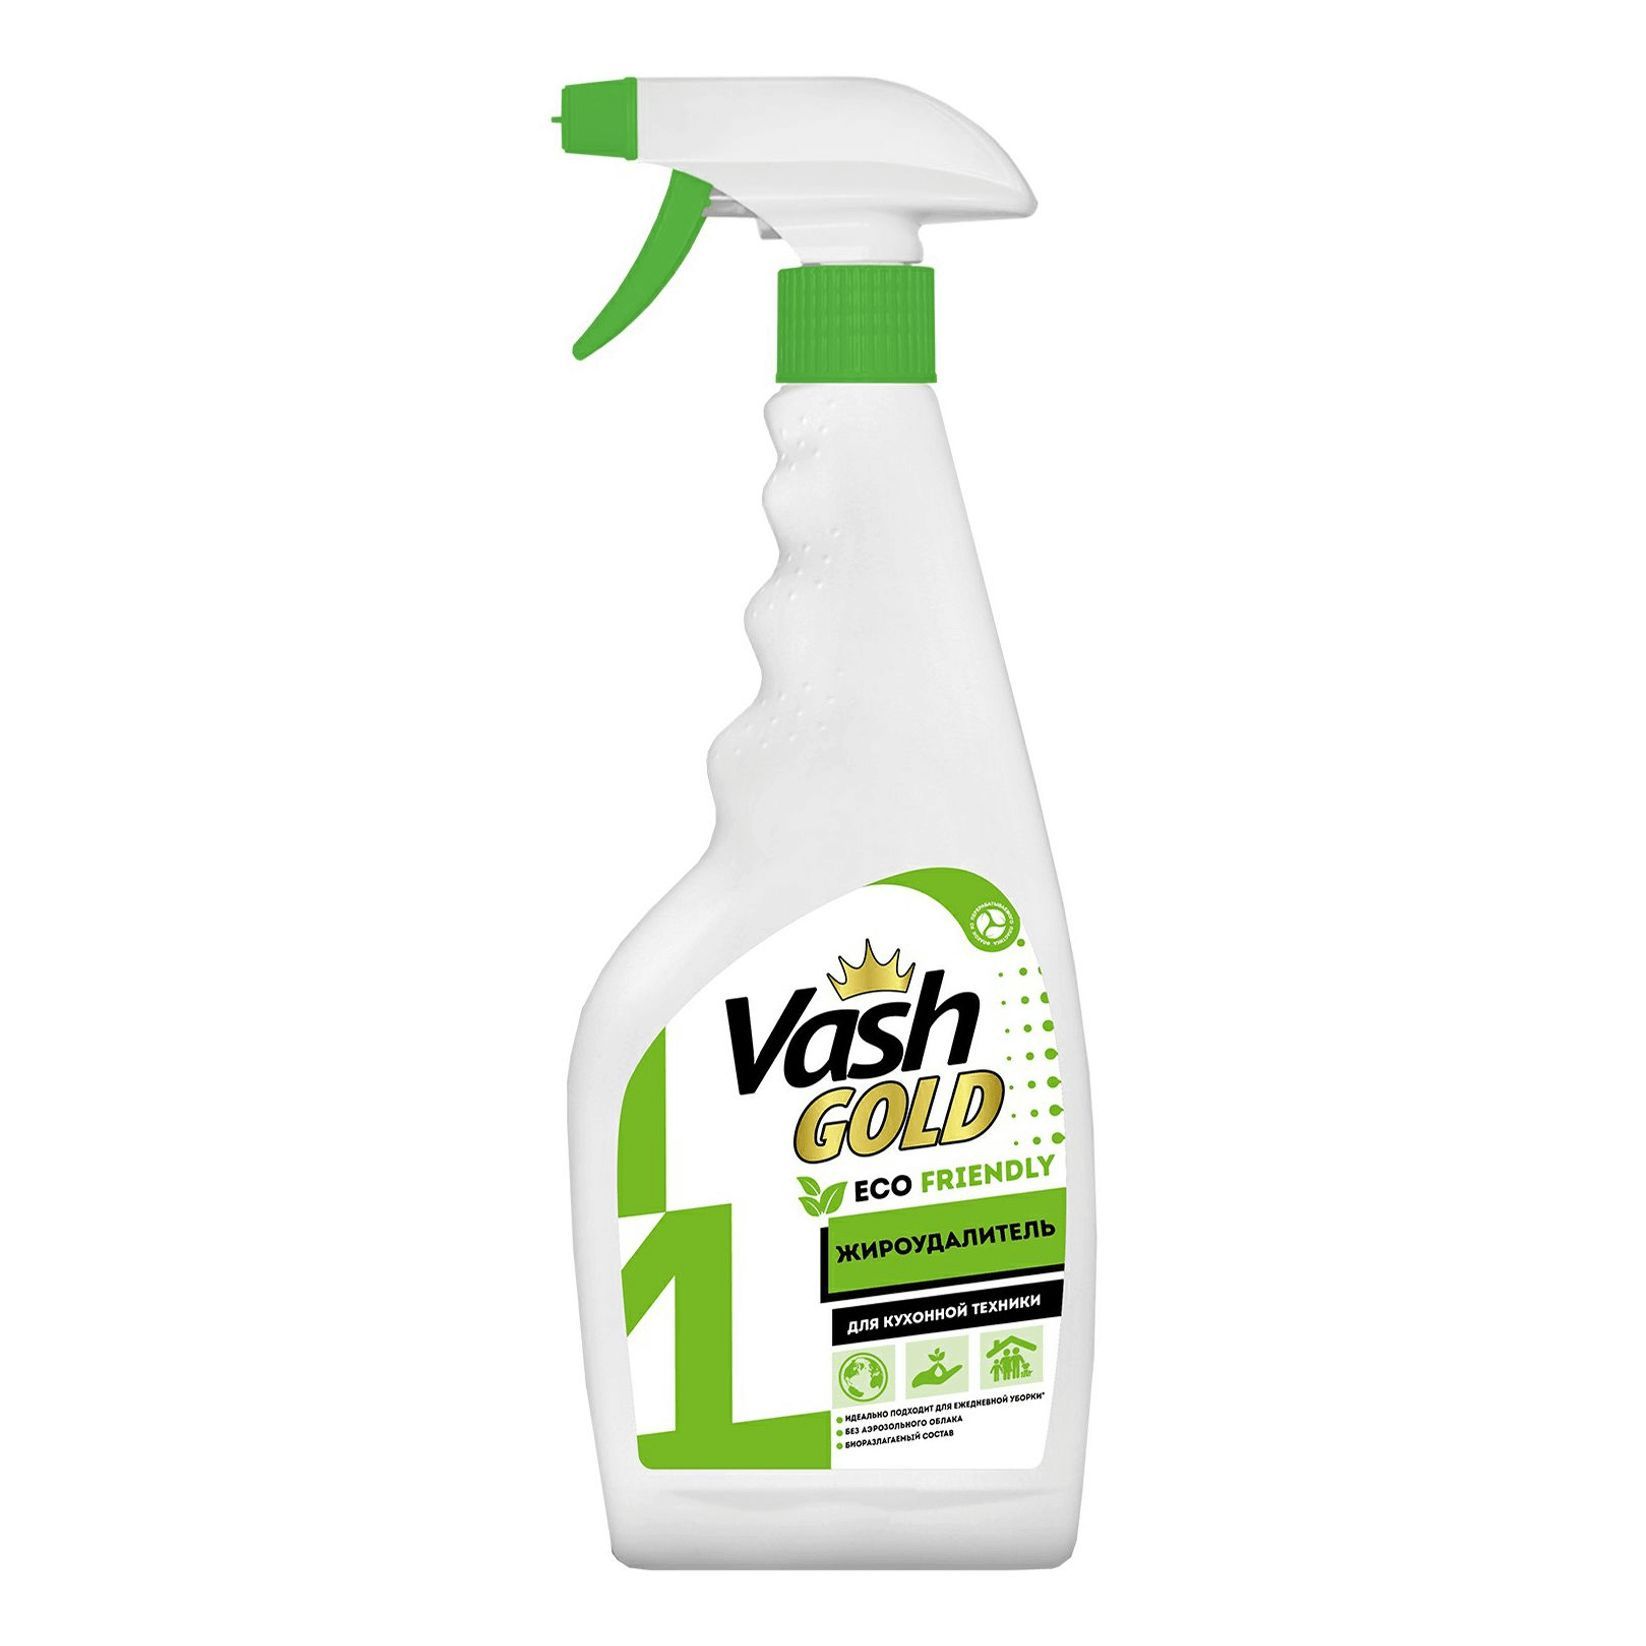 Vash Gold средство для чистки акриловых ванн и душевых кабин 500мл(спрей)